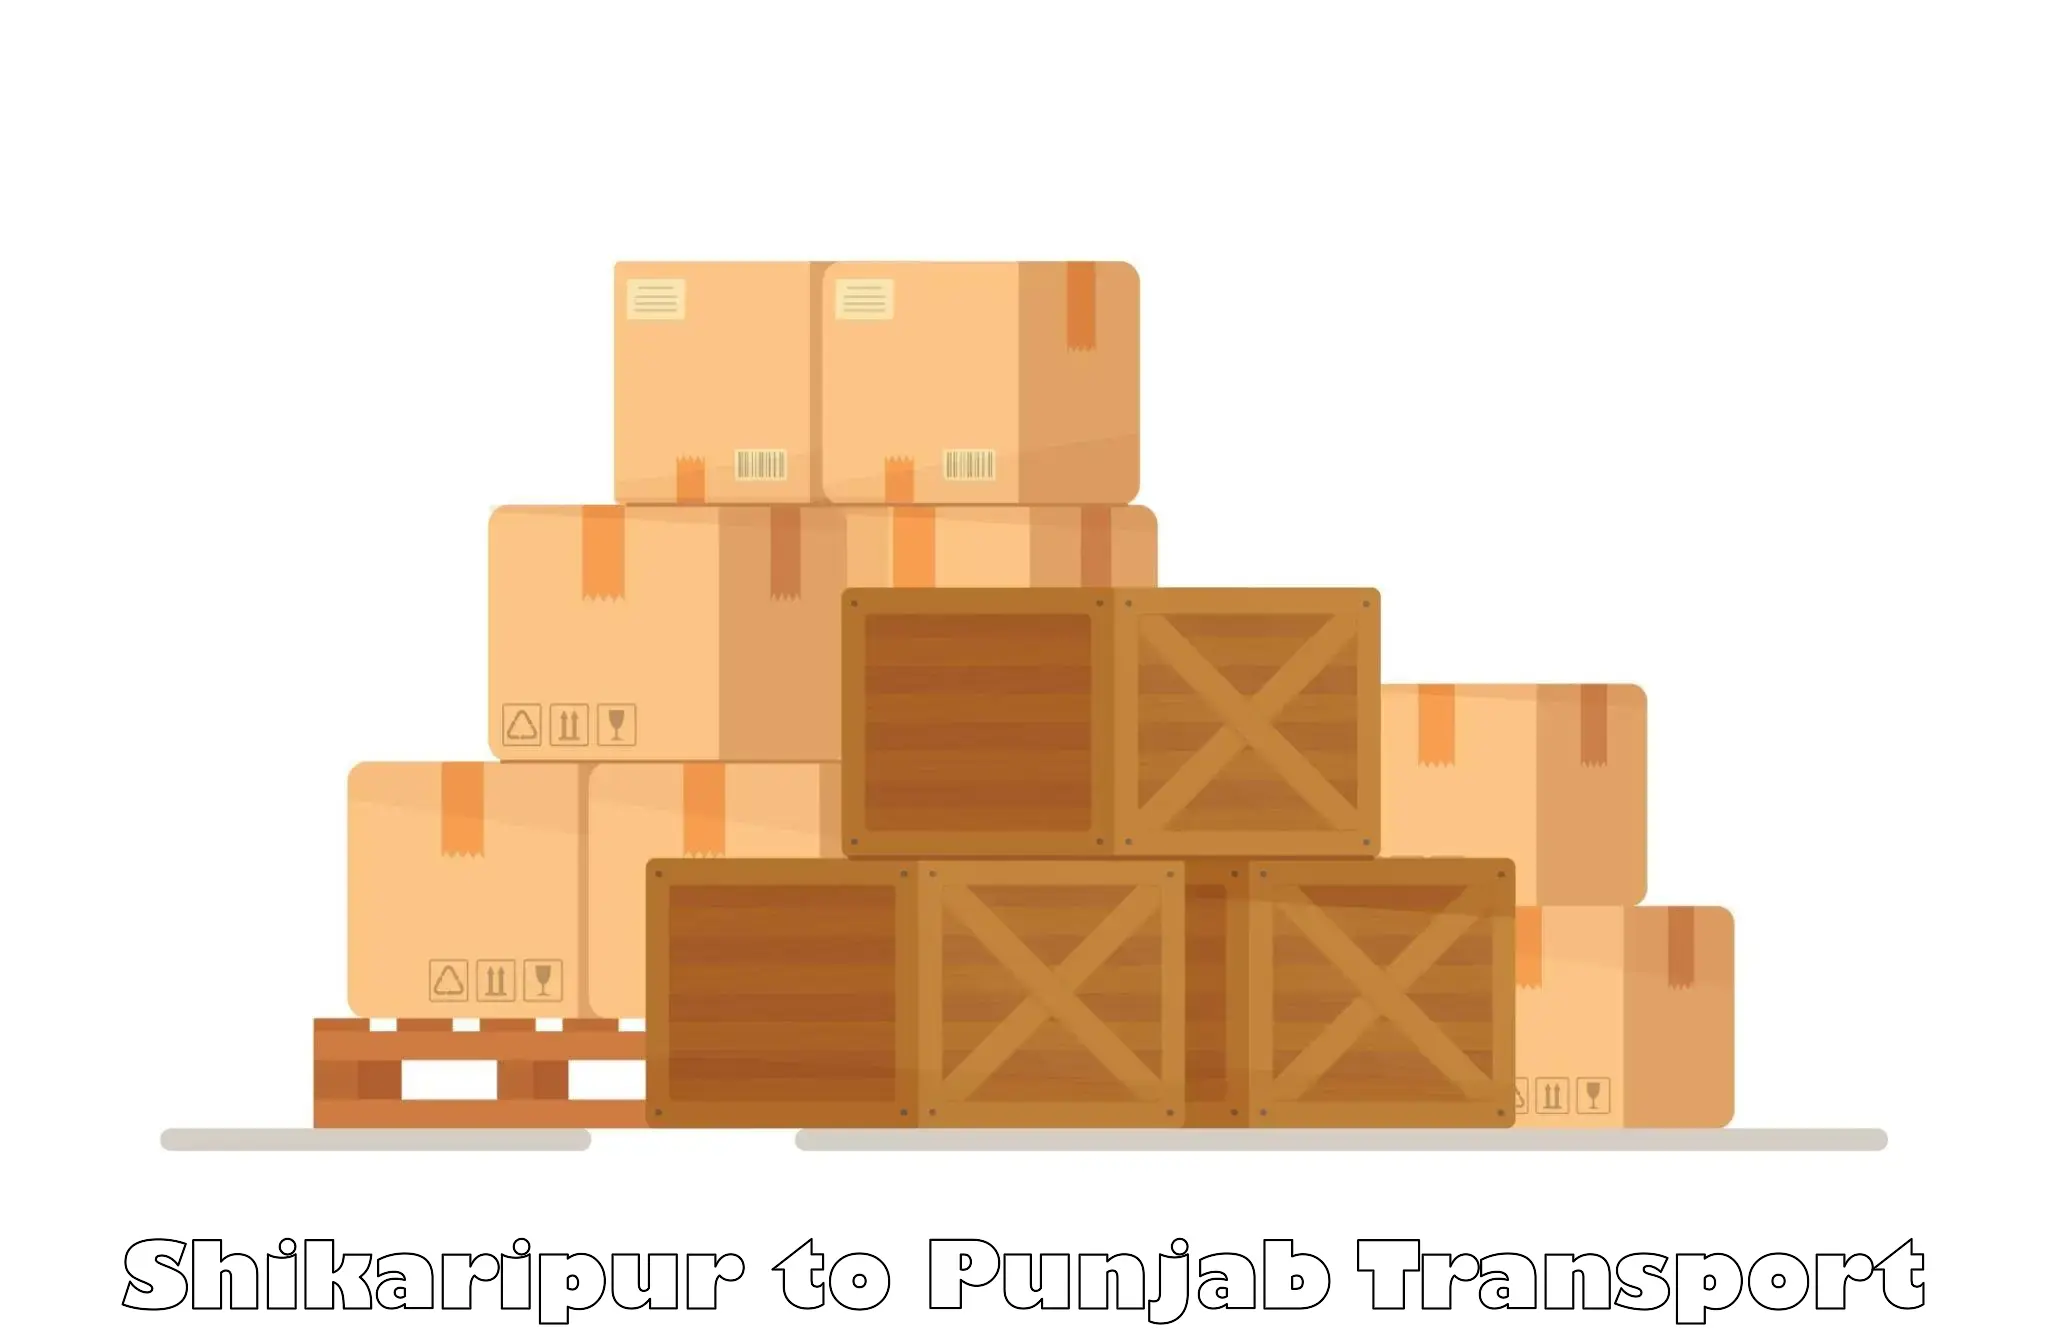 Shipping partner Shikaripur to Punjab